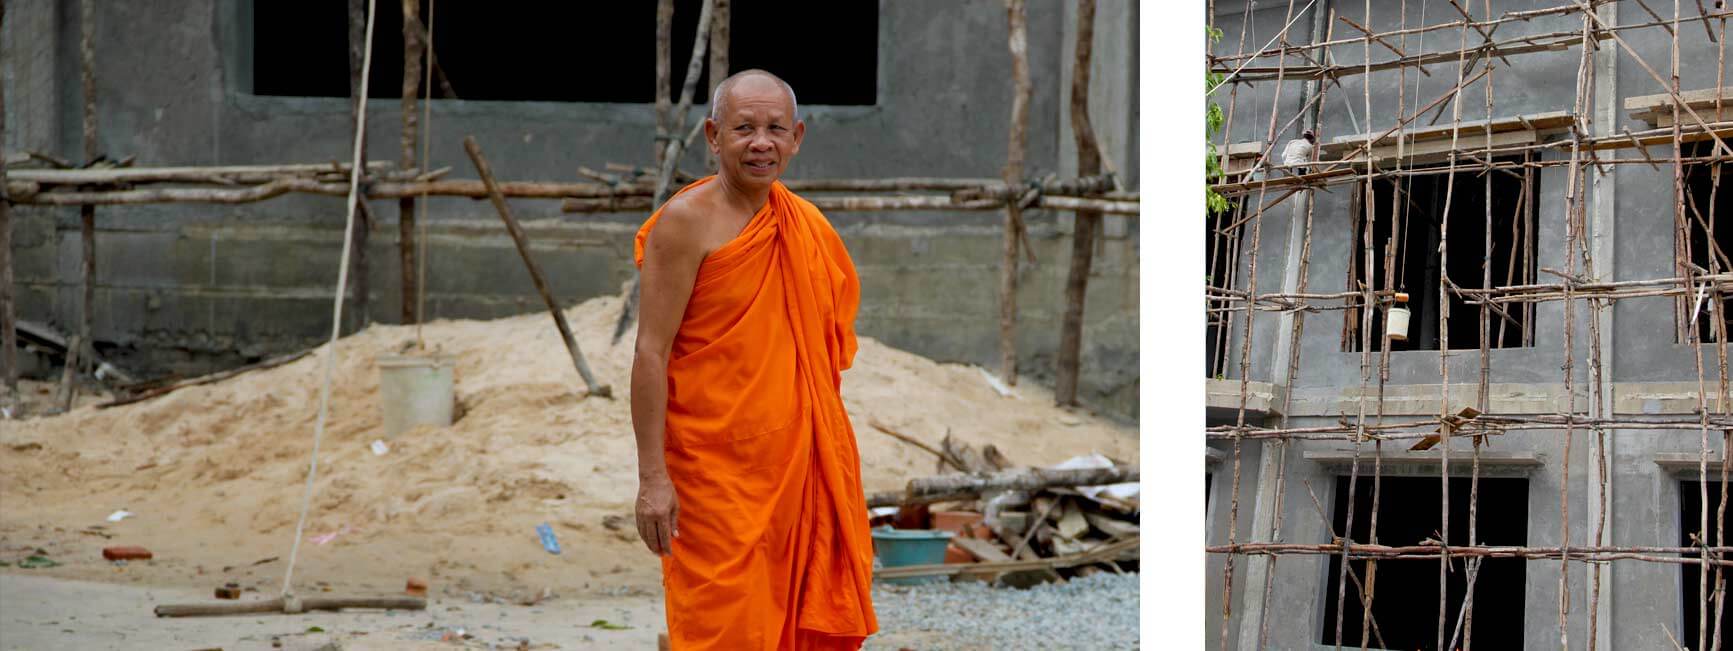 Mönch auf einer Baustelle in Siem Reap